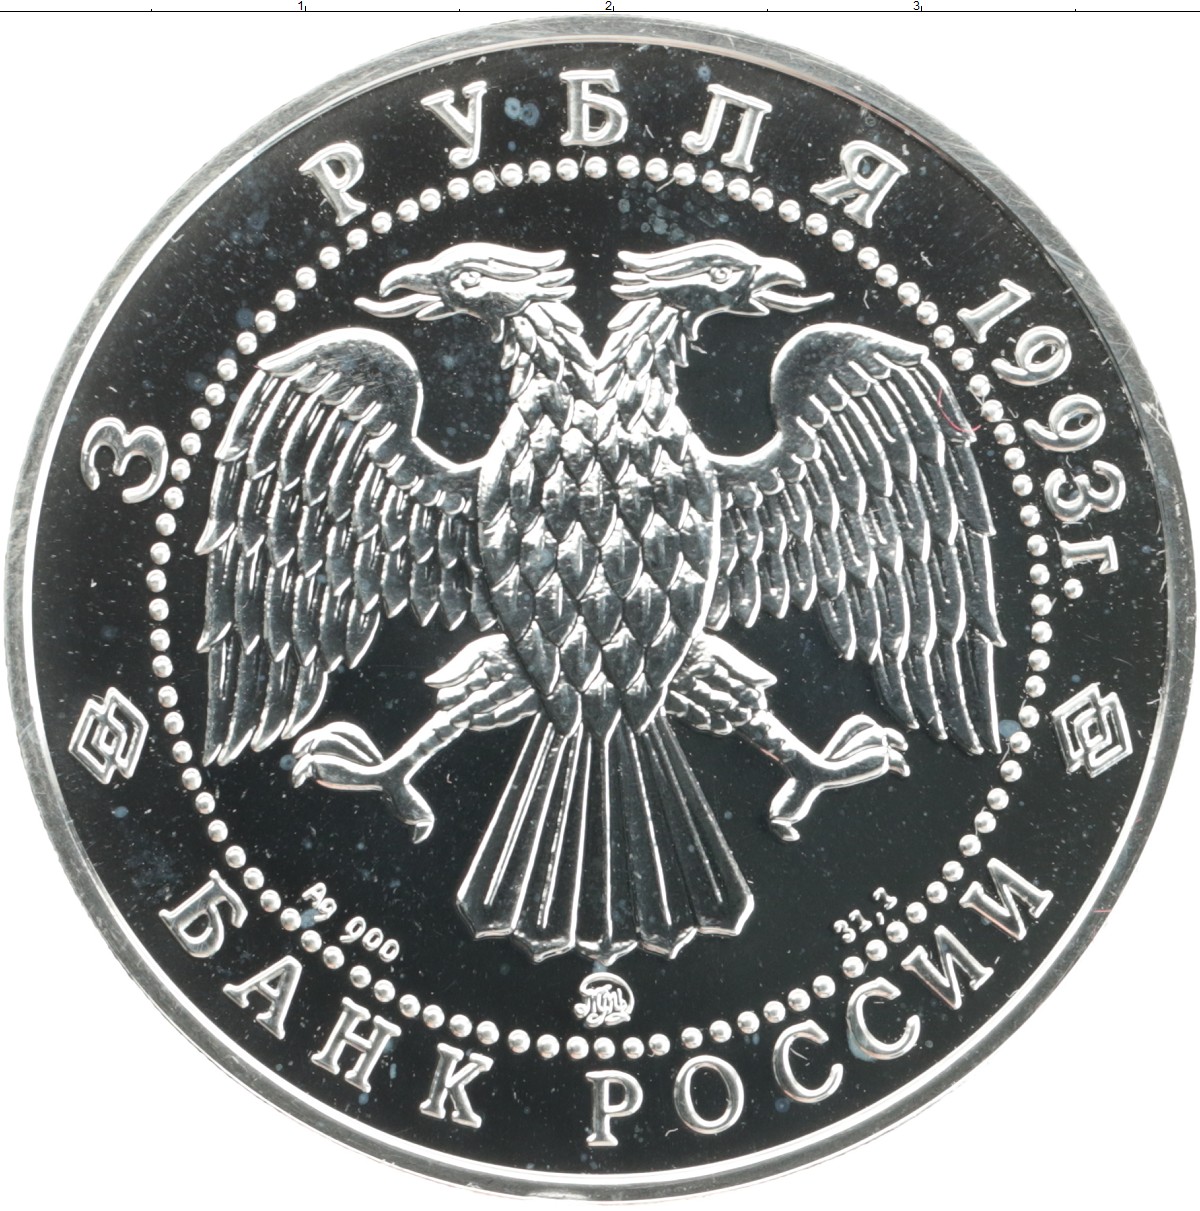 5 рублей серебром